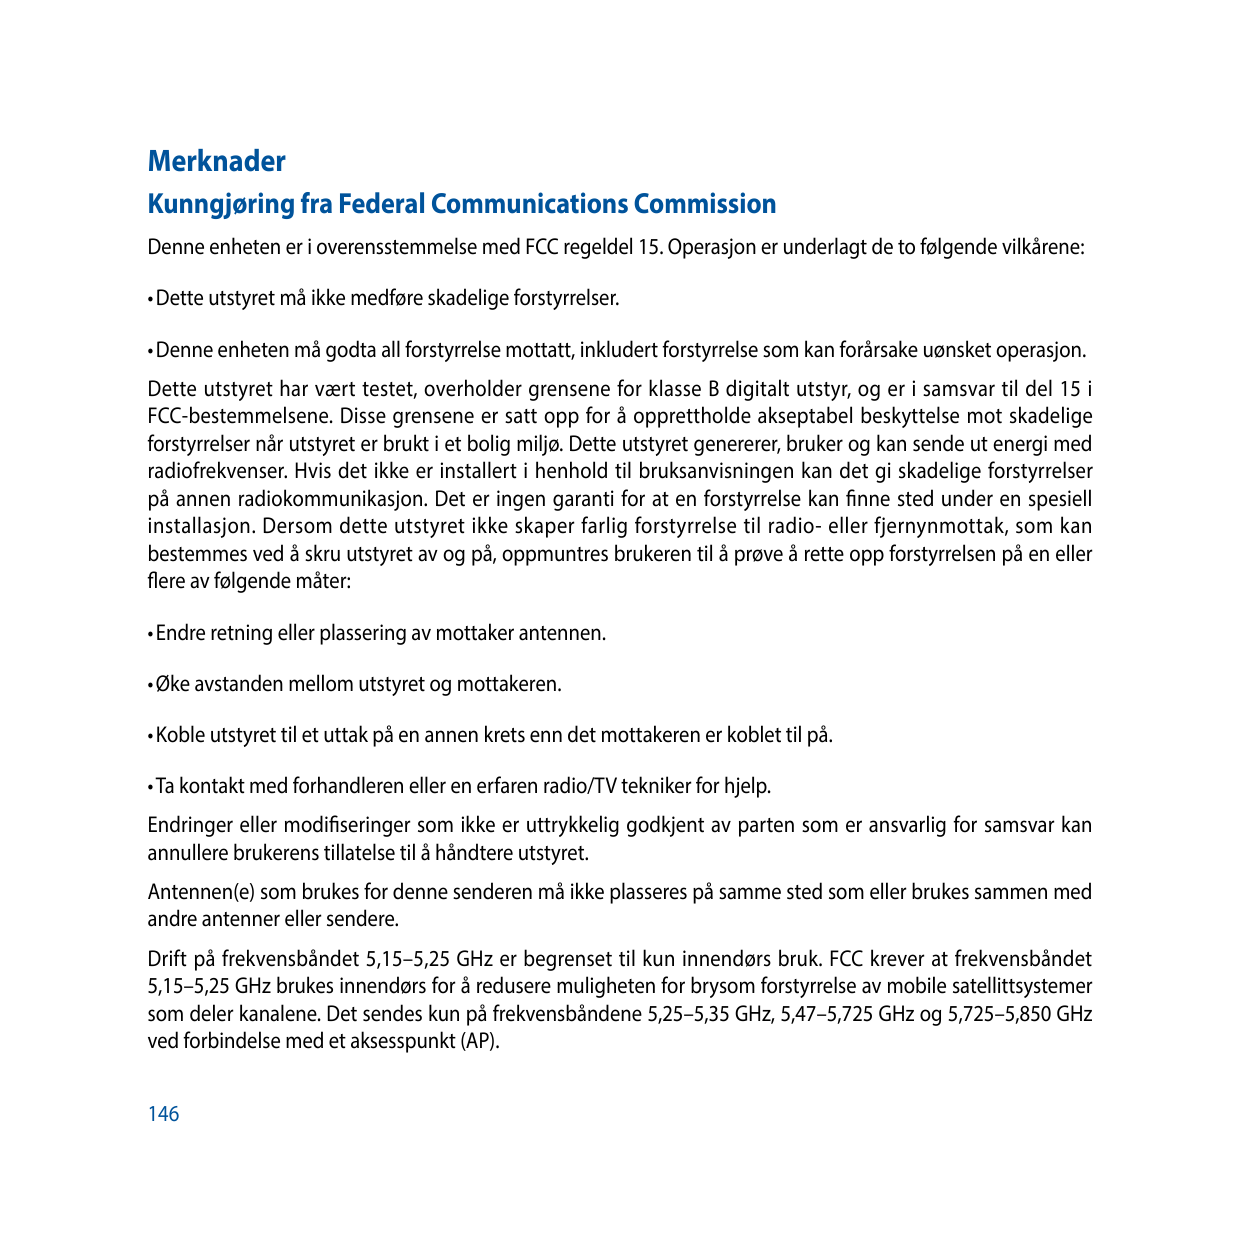 MerknaderKunngjøring fra Federal Communications CommissionDenne enheten er i overensstemmelse med FCC regeldel 15. Operasjon er 